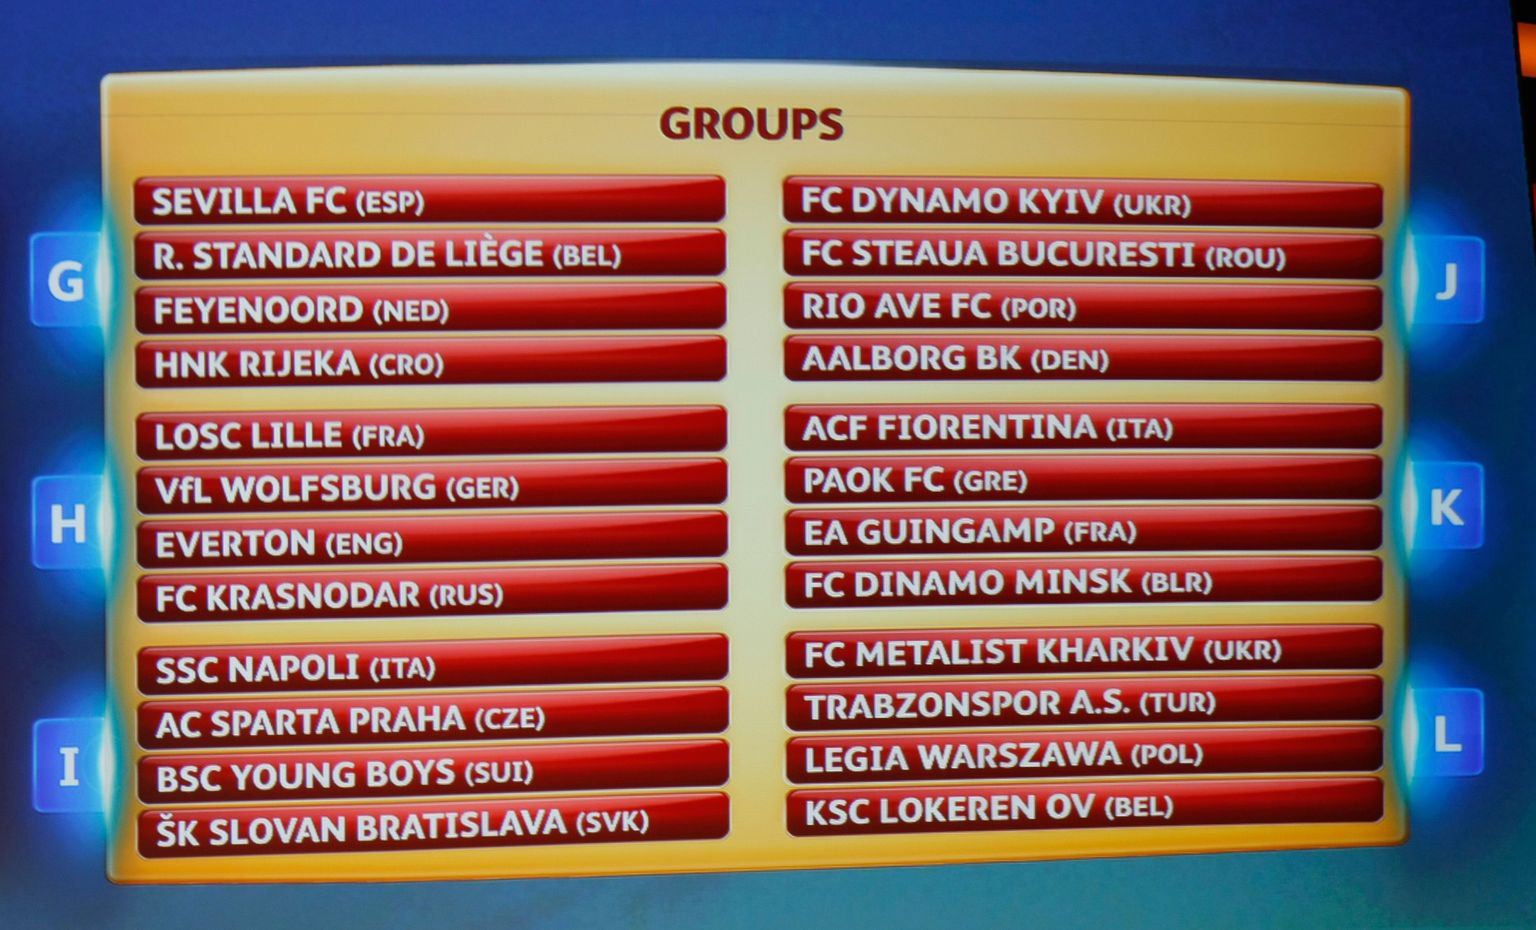 Euroopa liigas osalevad klubid loositi alagruppidesse.